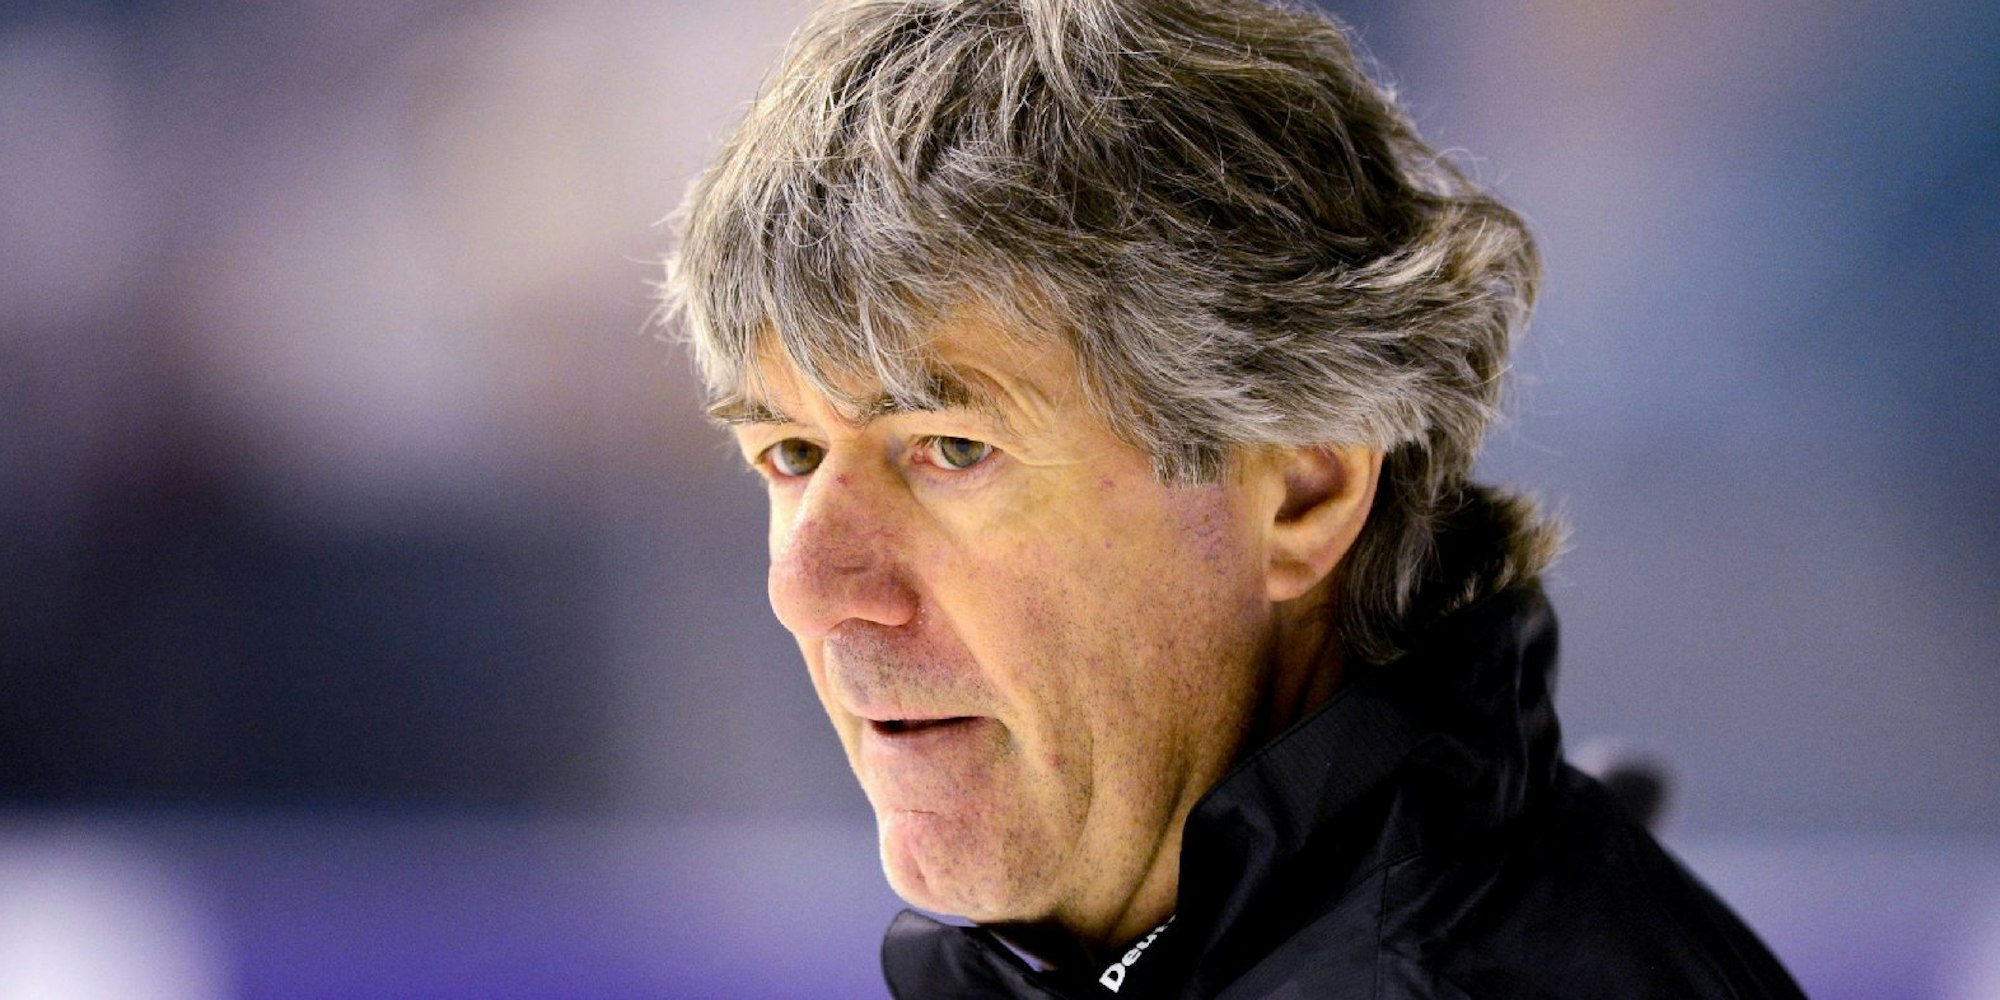 Jakob Kölliker wird nicht länger Eishockey-Nationaltrainer sein.